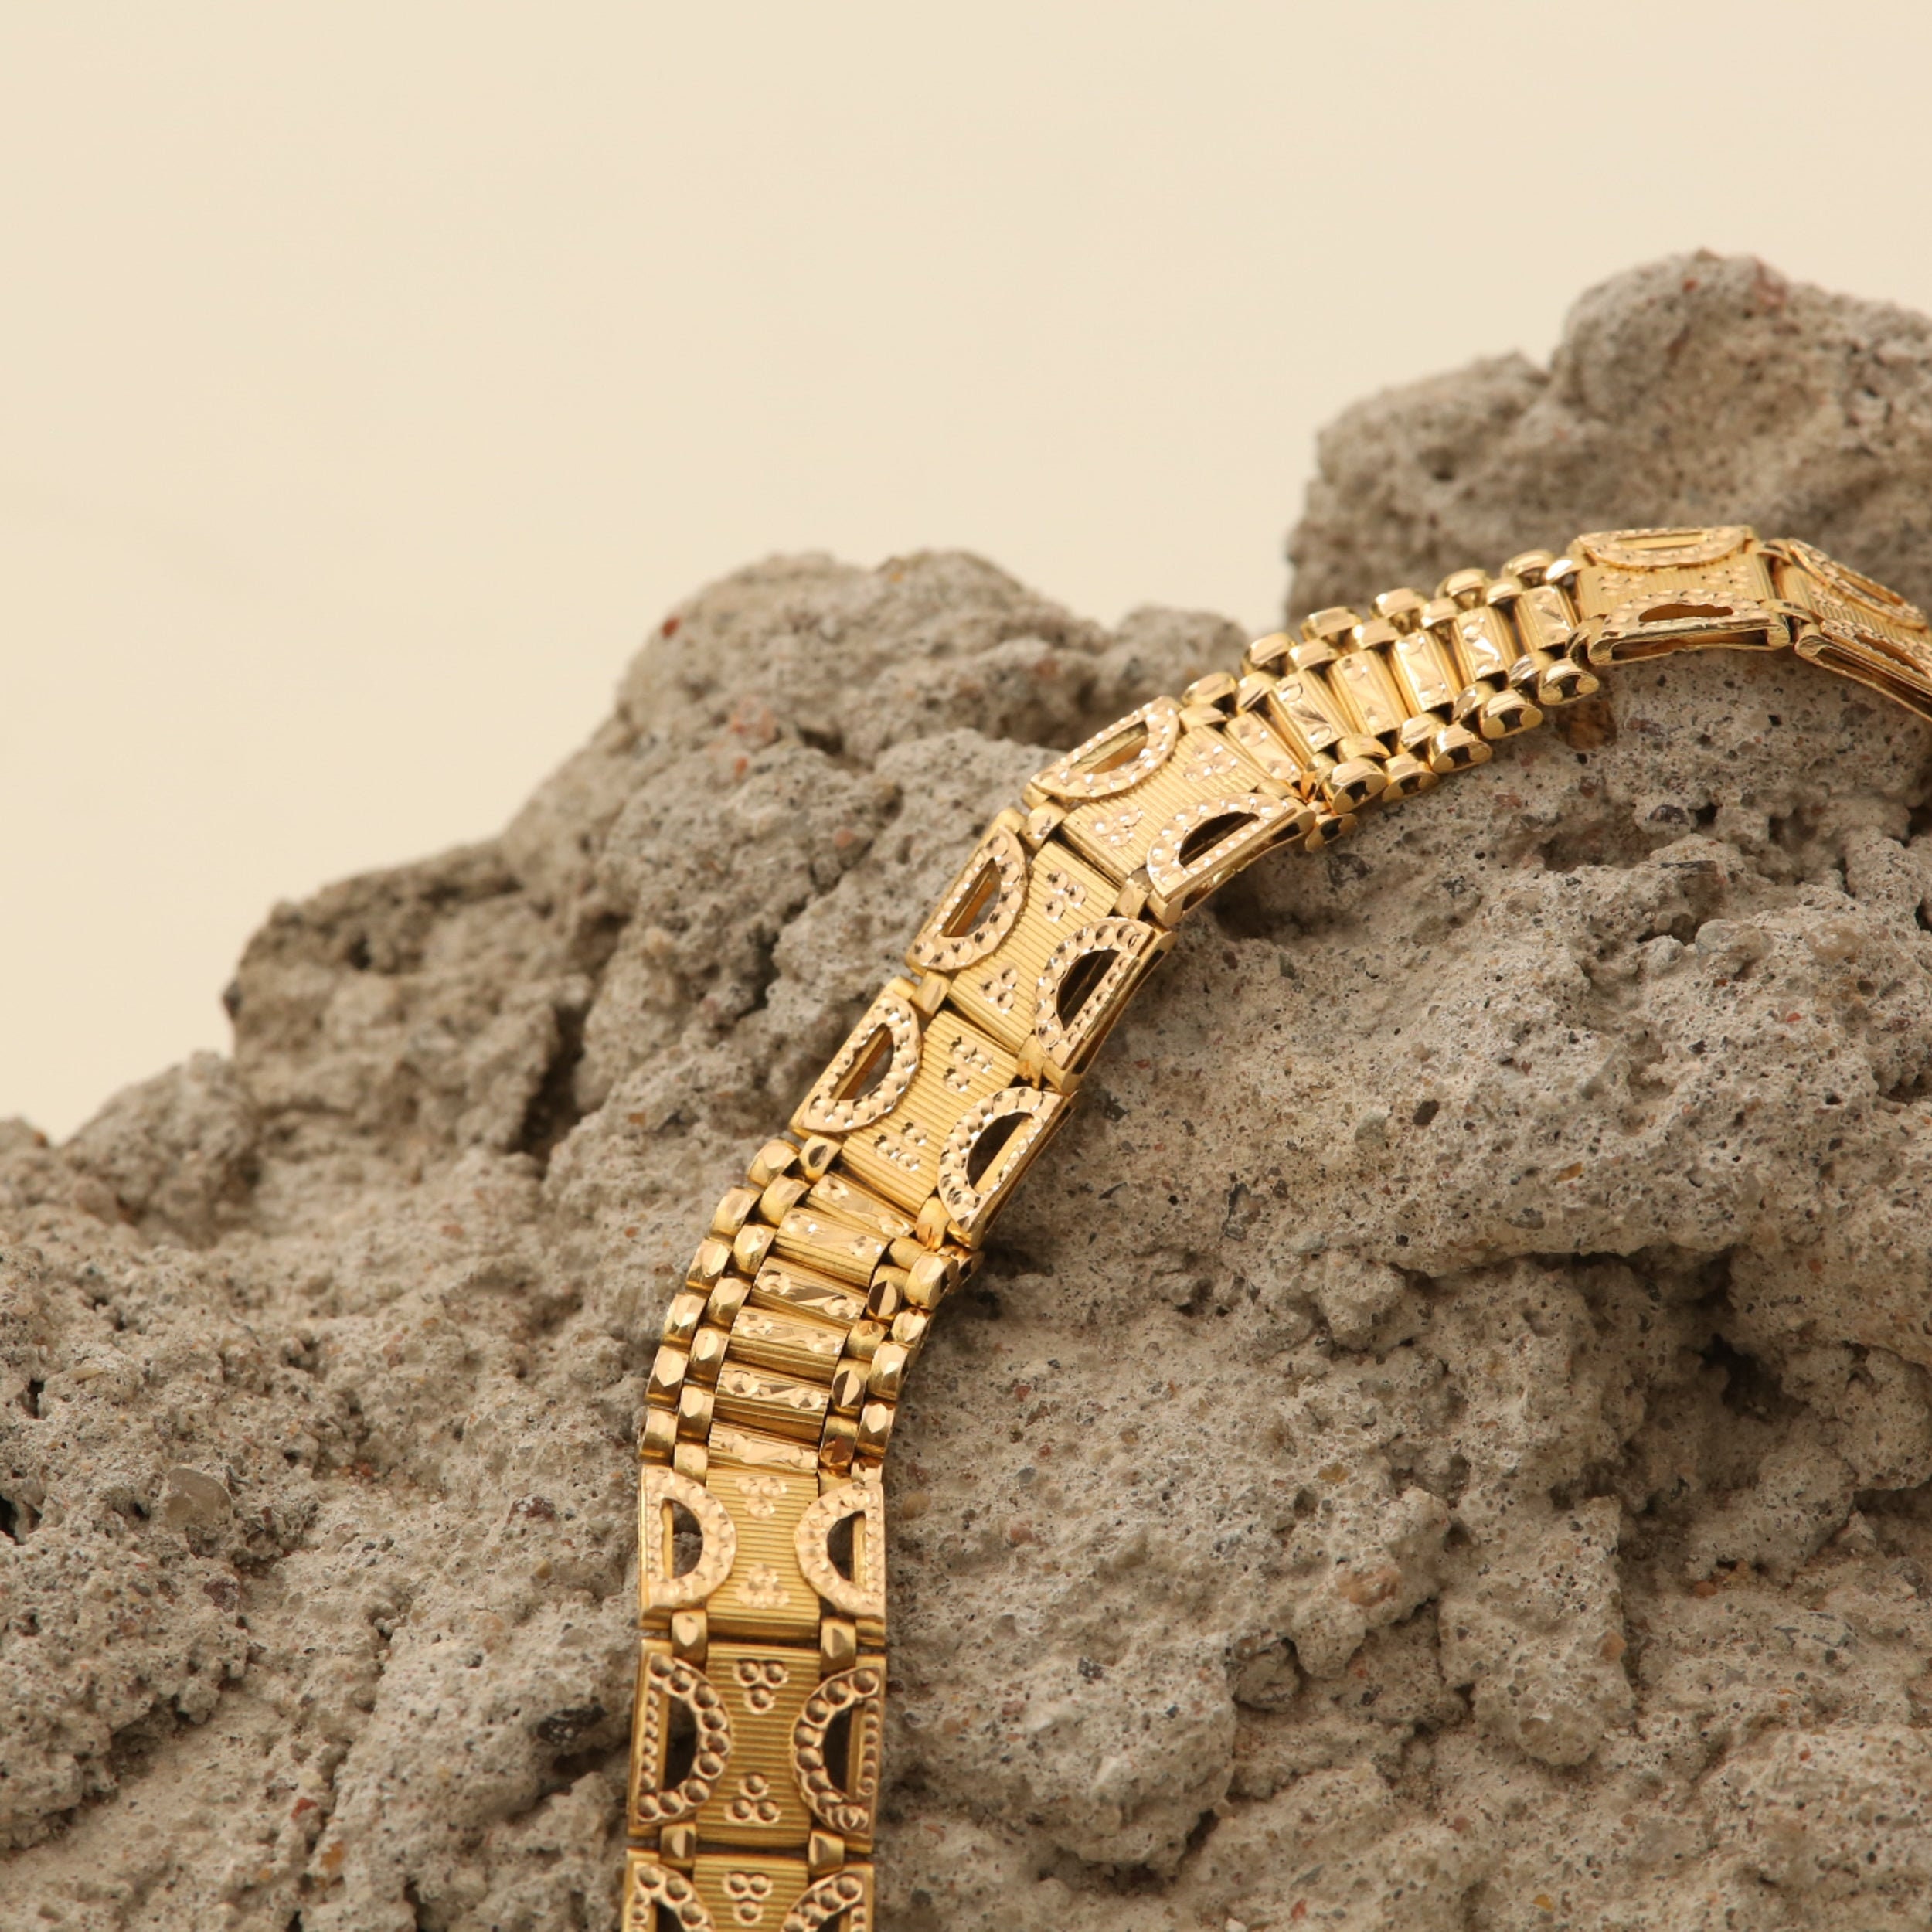 Bracelet élastique femme Tsar en argent doré